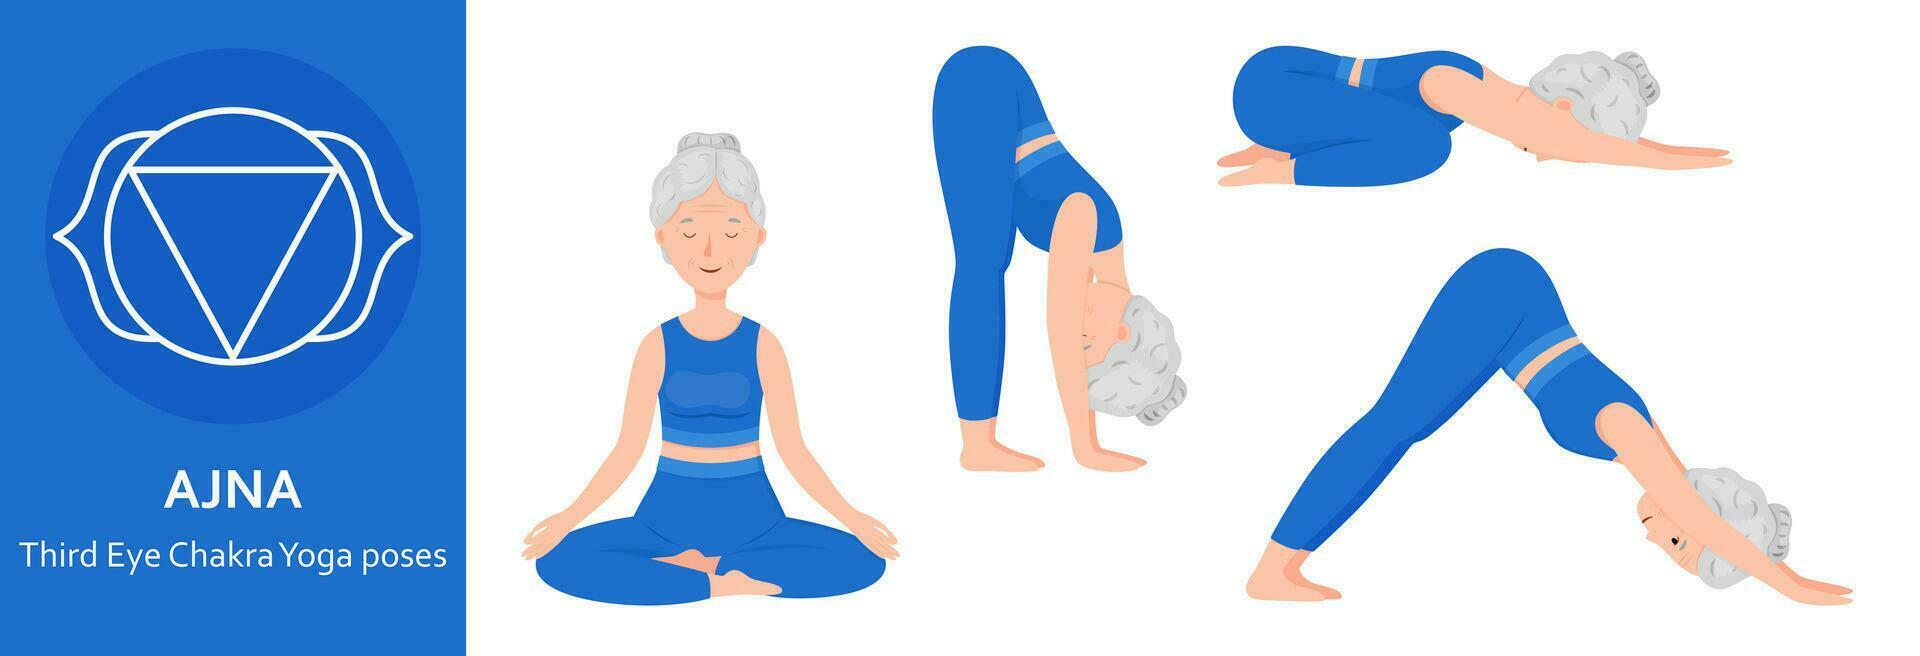 dritte Auge Chakra Yoga Posen. Alten Frau üben ajna Chakra Yoga Asanas. gesund Lebensstil. eben Karikatur Charakter. Vektor Illustration